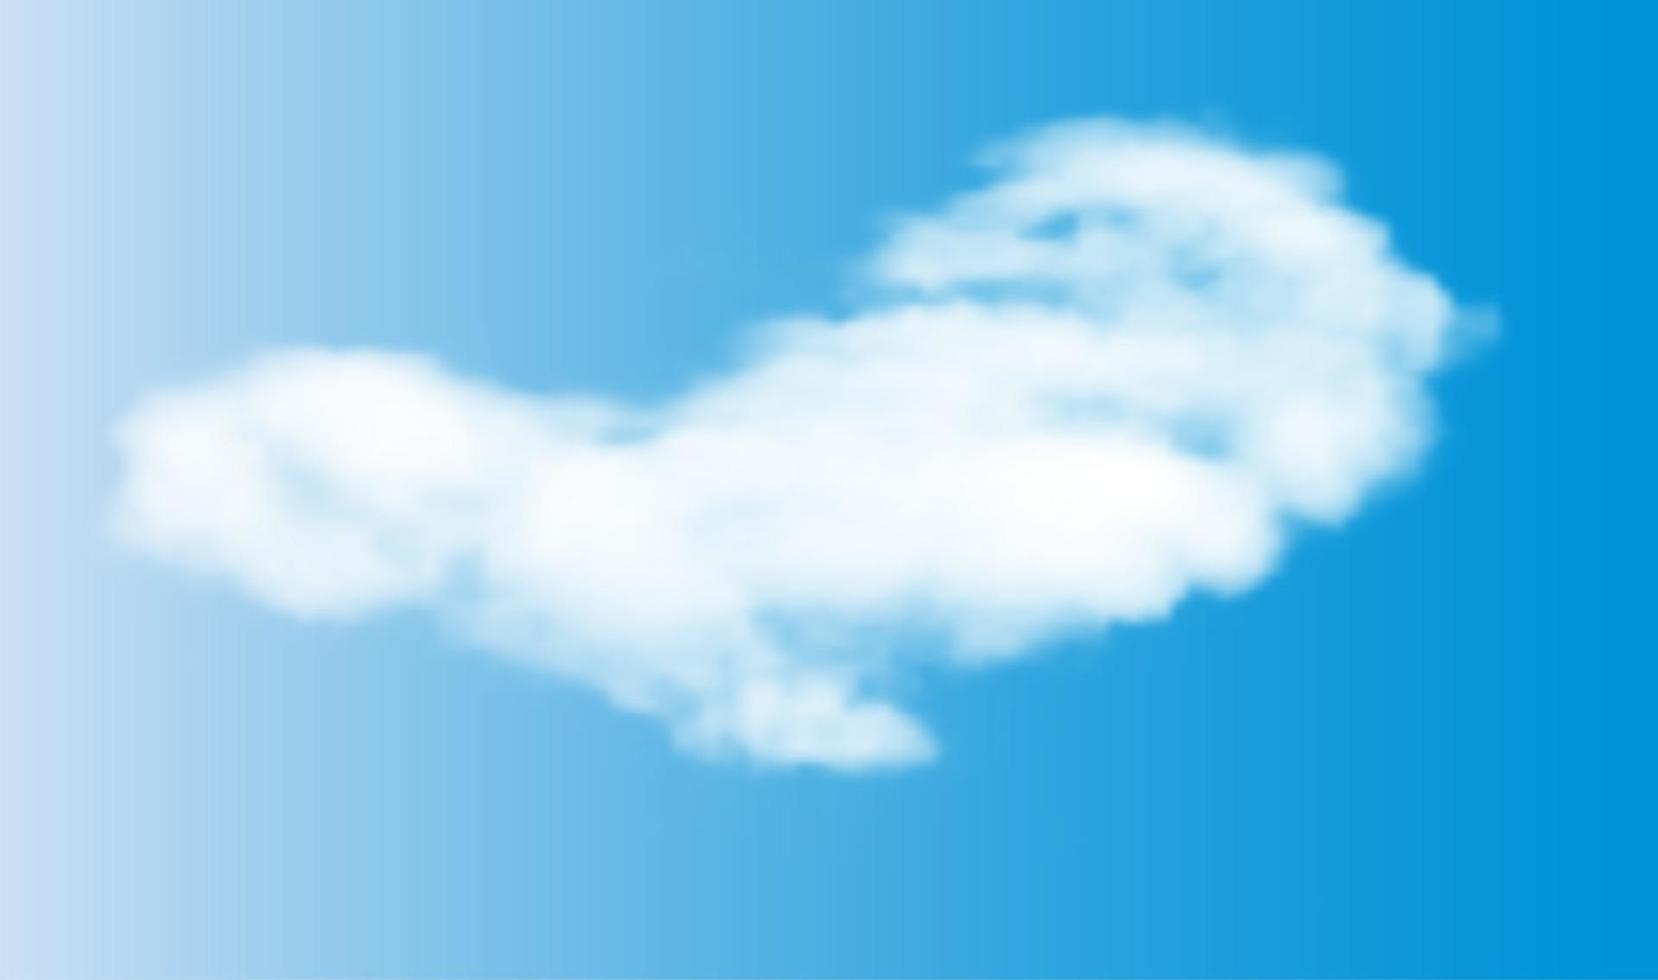 nuages blancs 3d réalistes sur fond de ciel bleu. illustration vectorielle eps10 vecteur